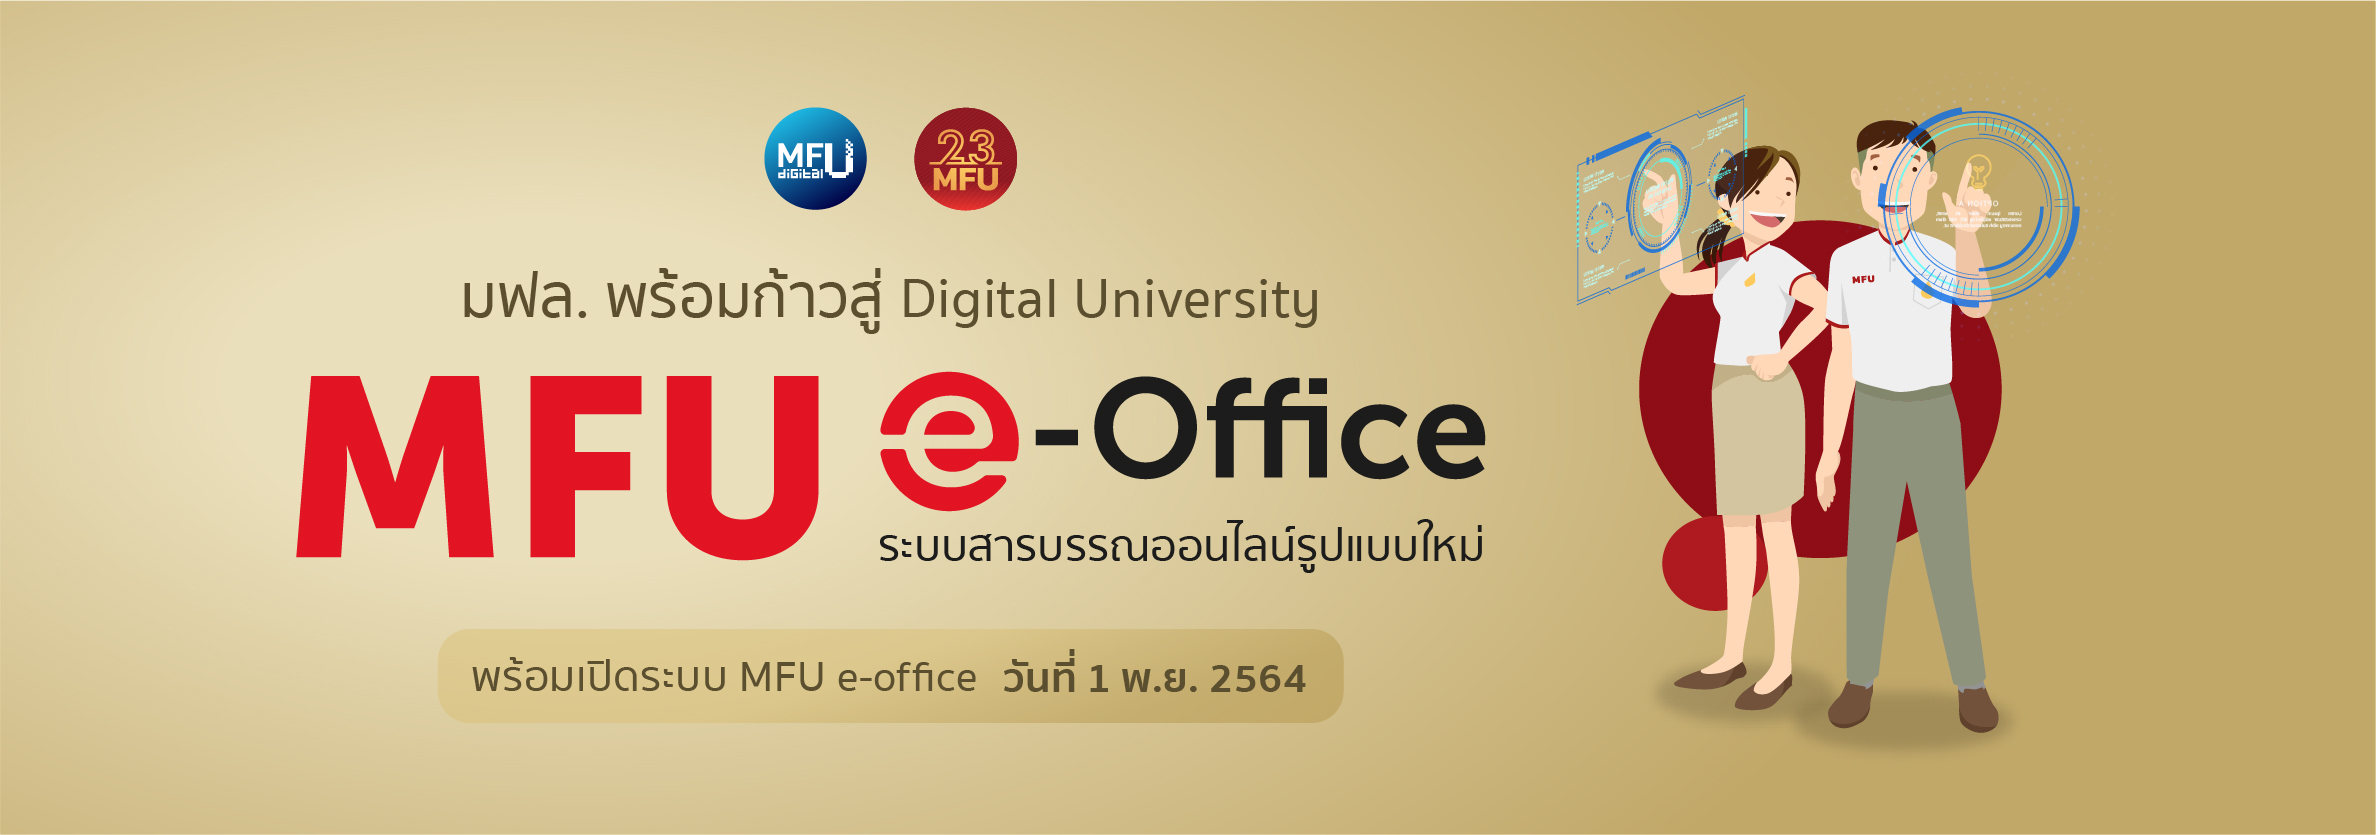 mfu e-office